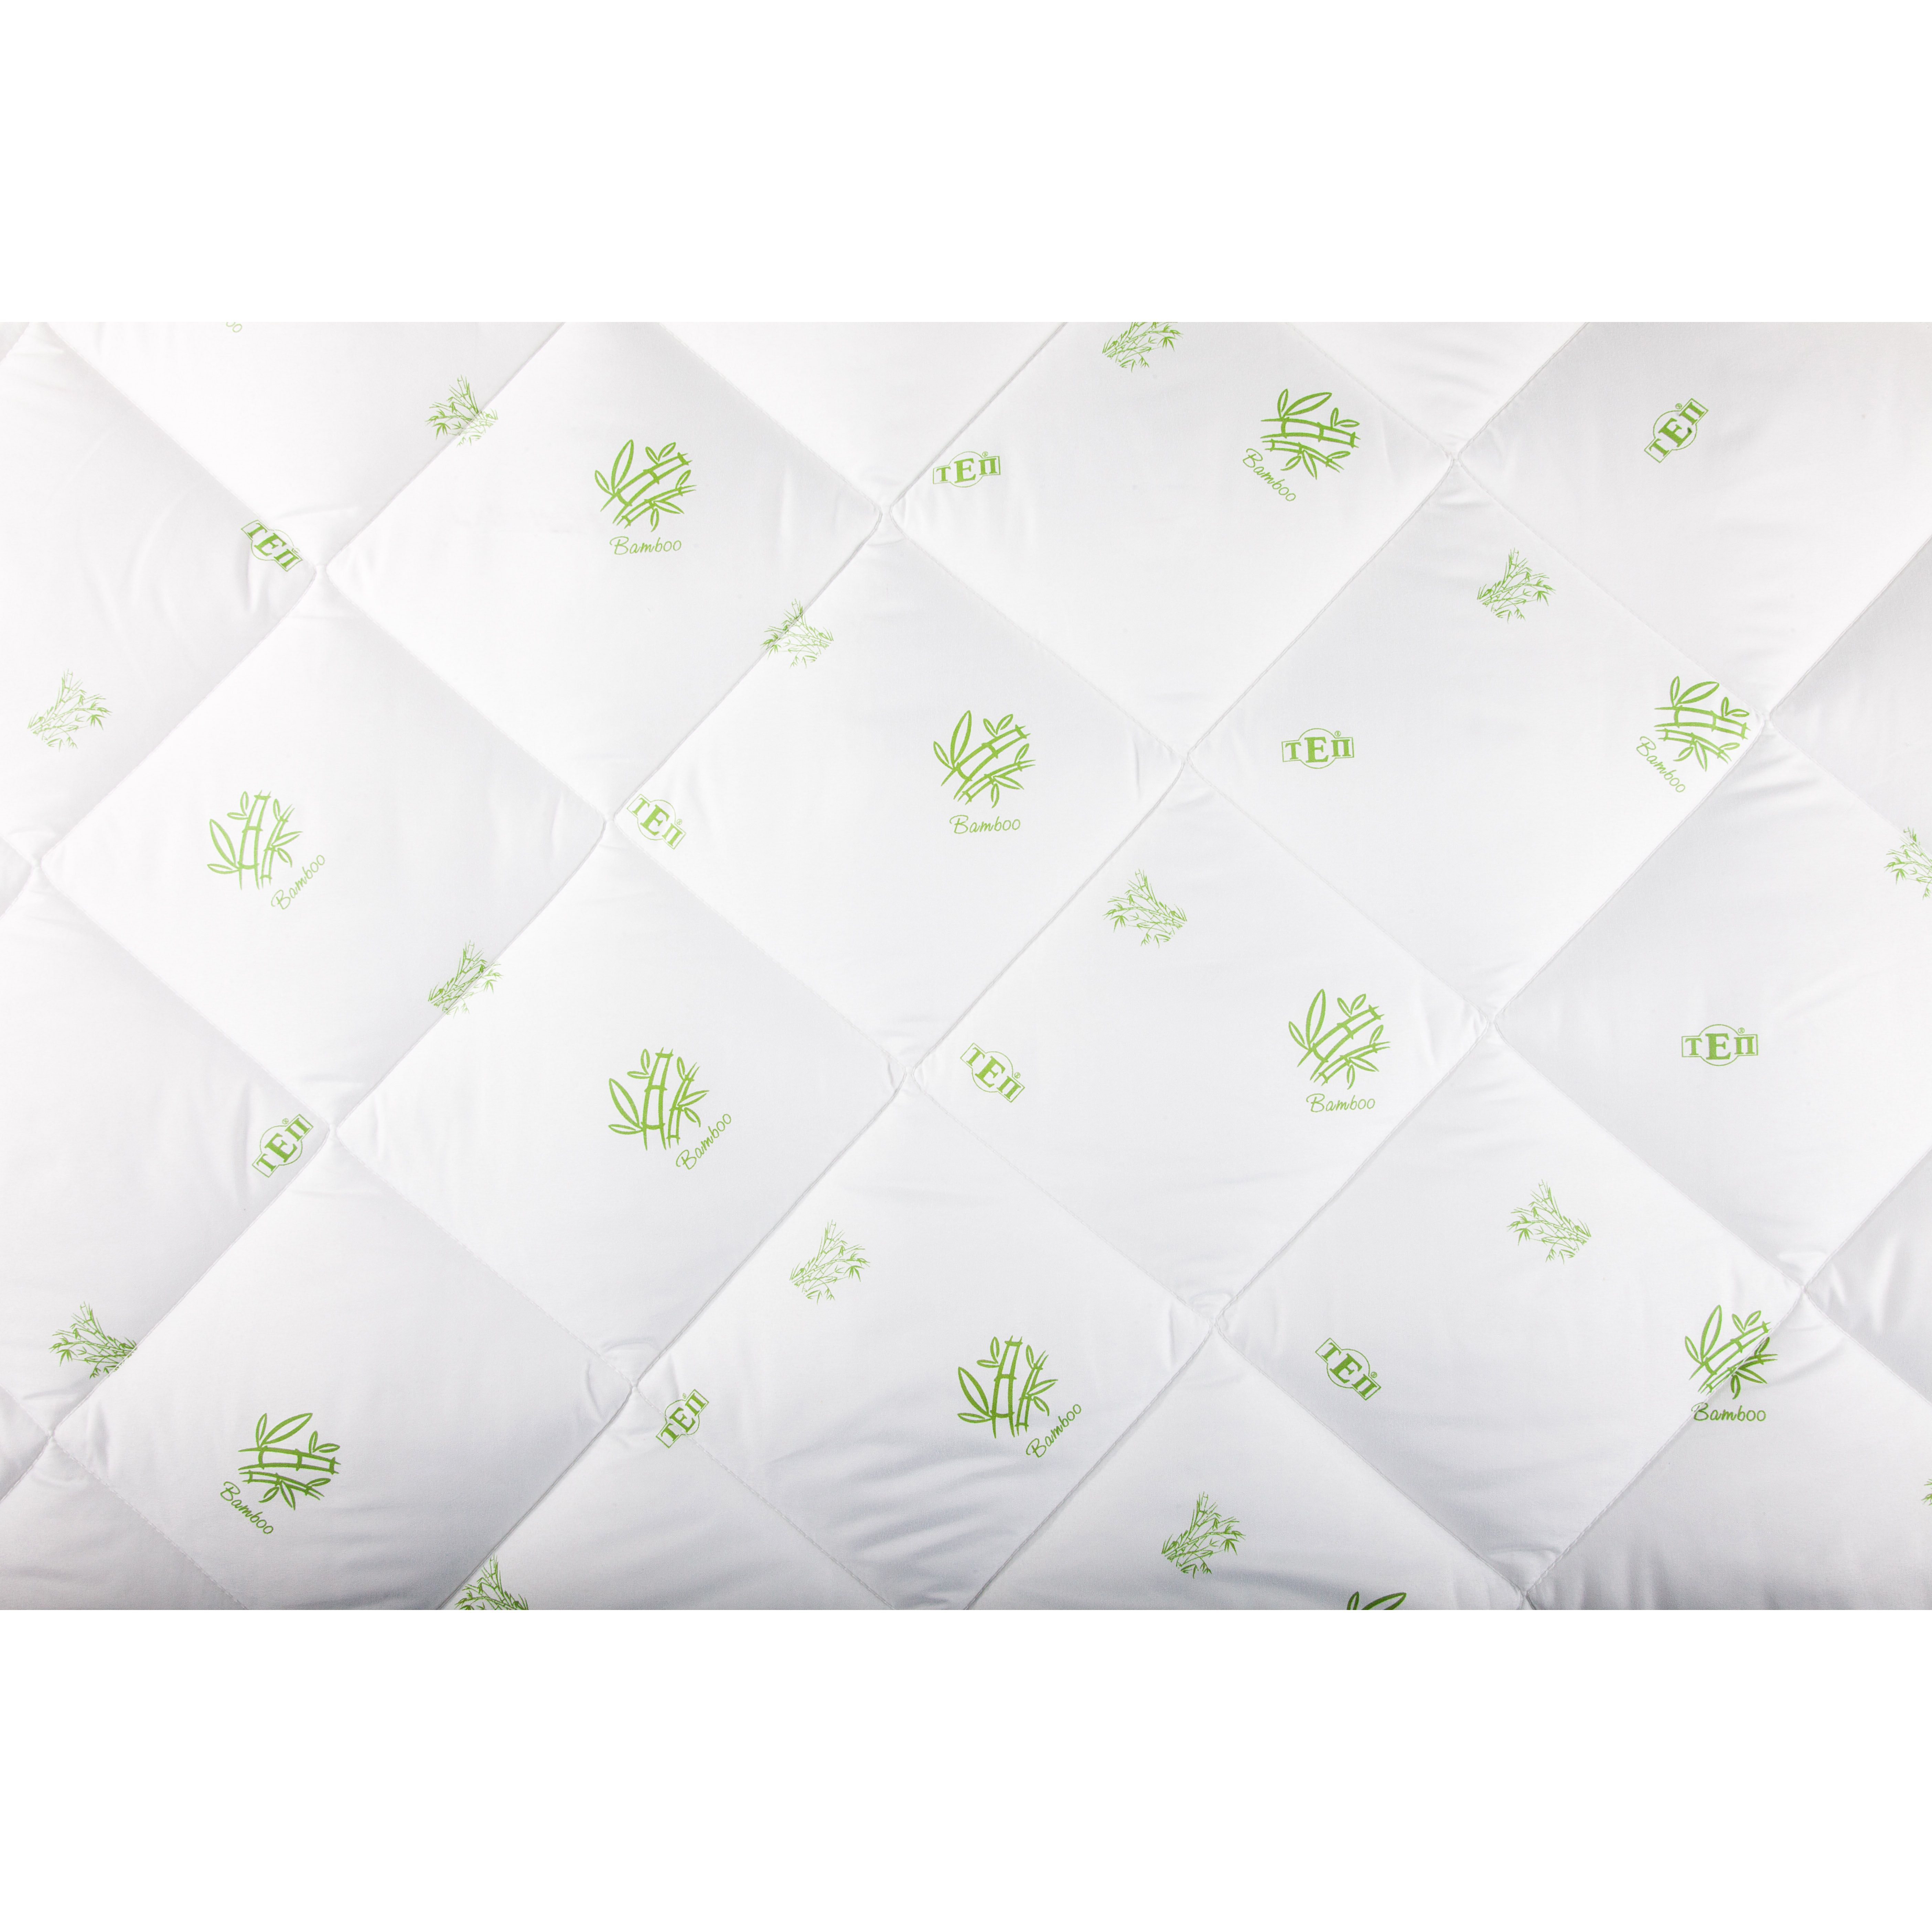 Одеяло ТЕП Dream Collection Bamboo 180x210 белое (1-00763_00000) - фото 4